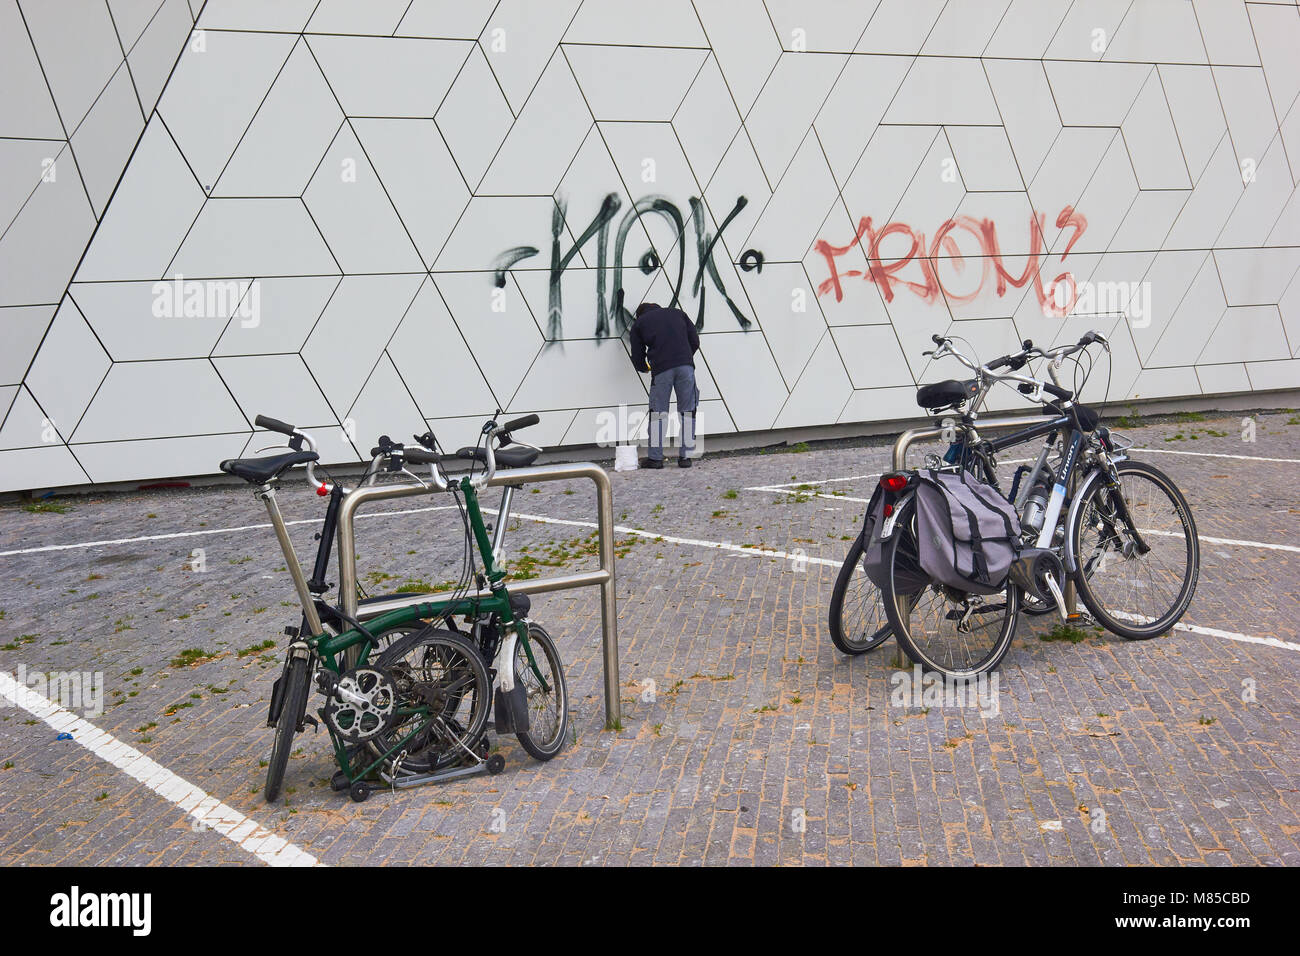 L'homme l'enlèvement des graffitis, de l'ŒIL, Film Instittute Overhoeks, Amsterdam-Noord, Amsterdam, Pays-Bas. Banque D'Images